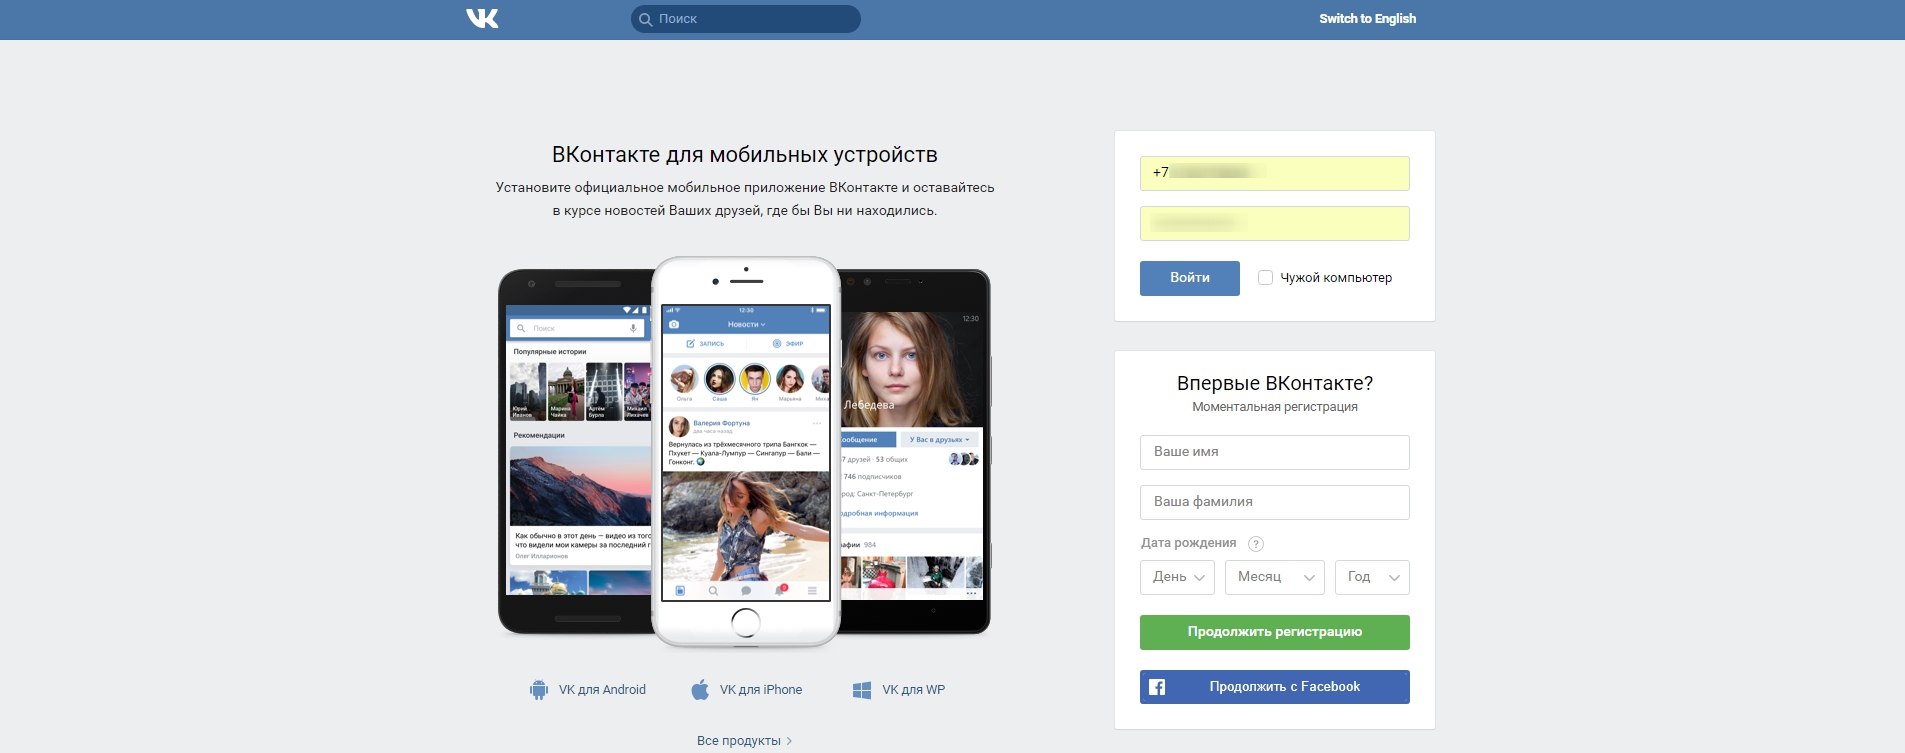 Популярная социальная сеть в России